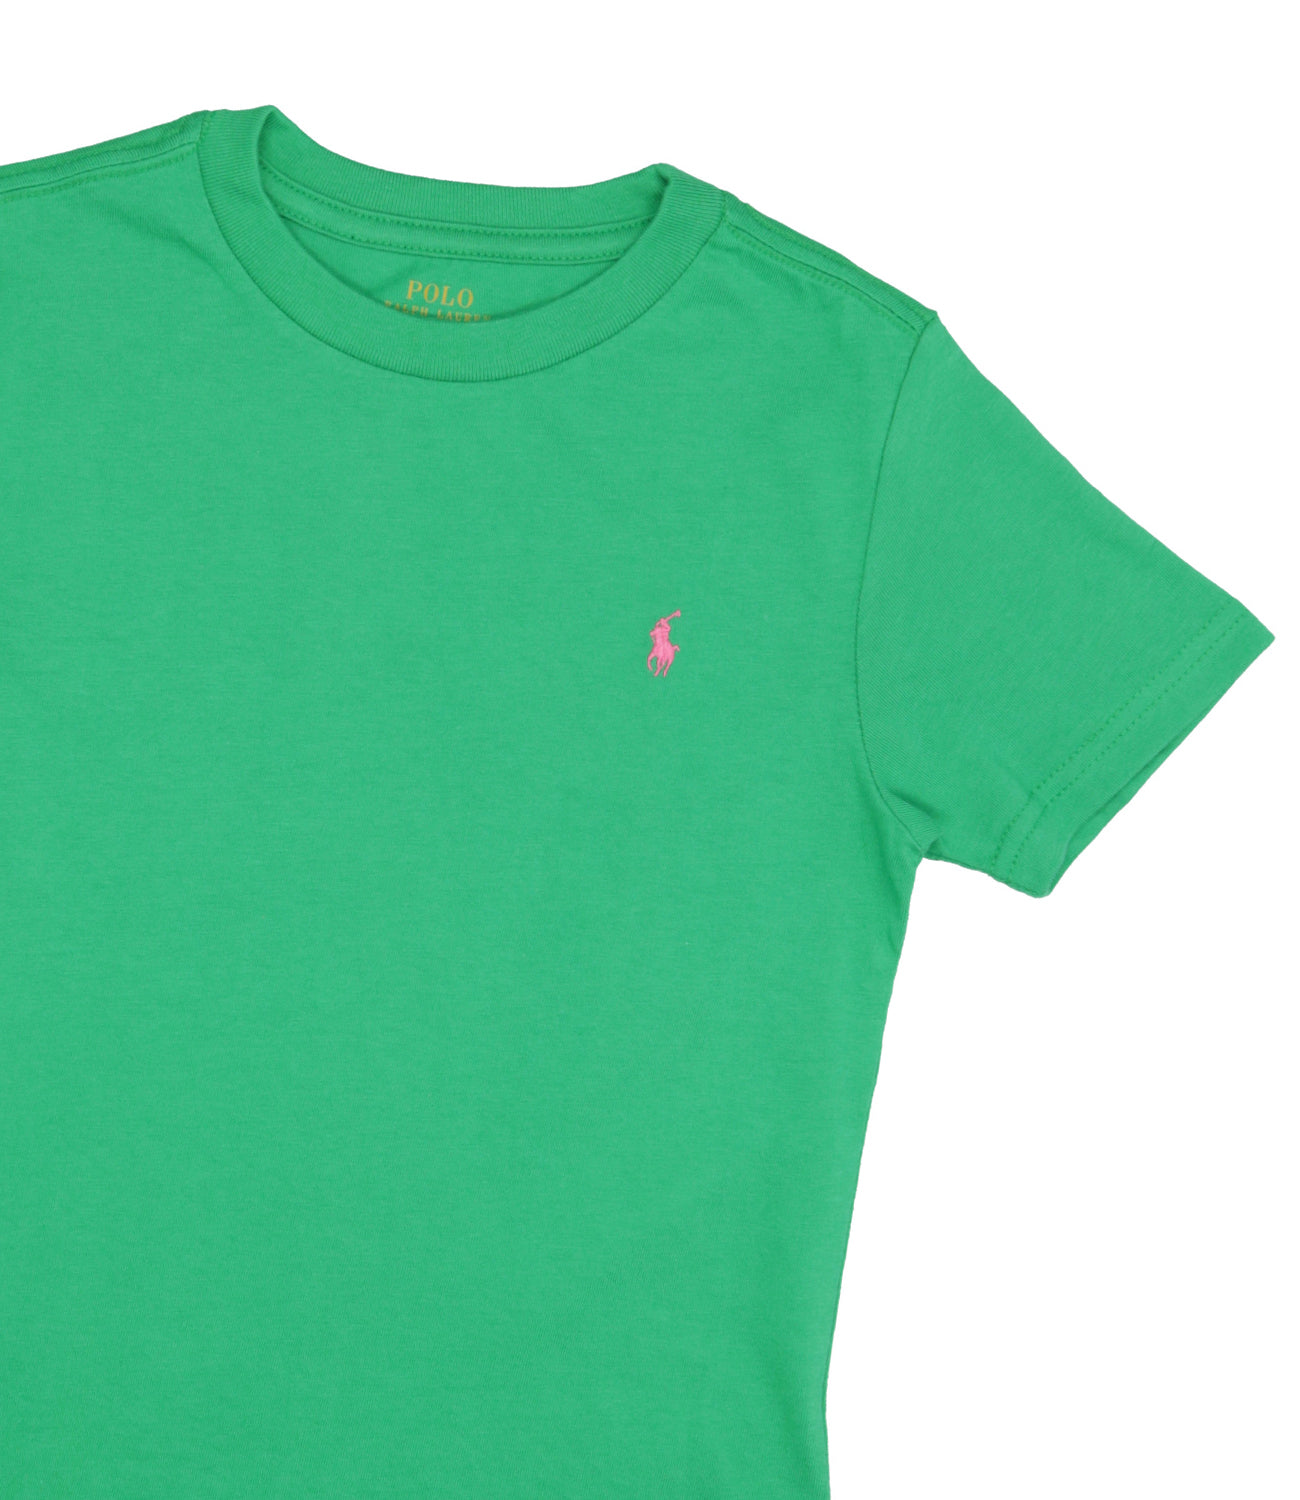 Ralph Lauren Childrenswear | Lawn Green T-Shirt